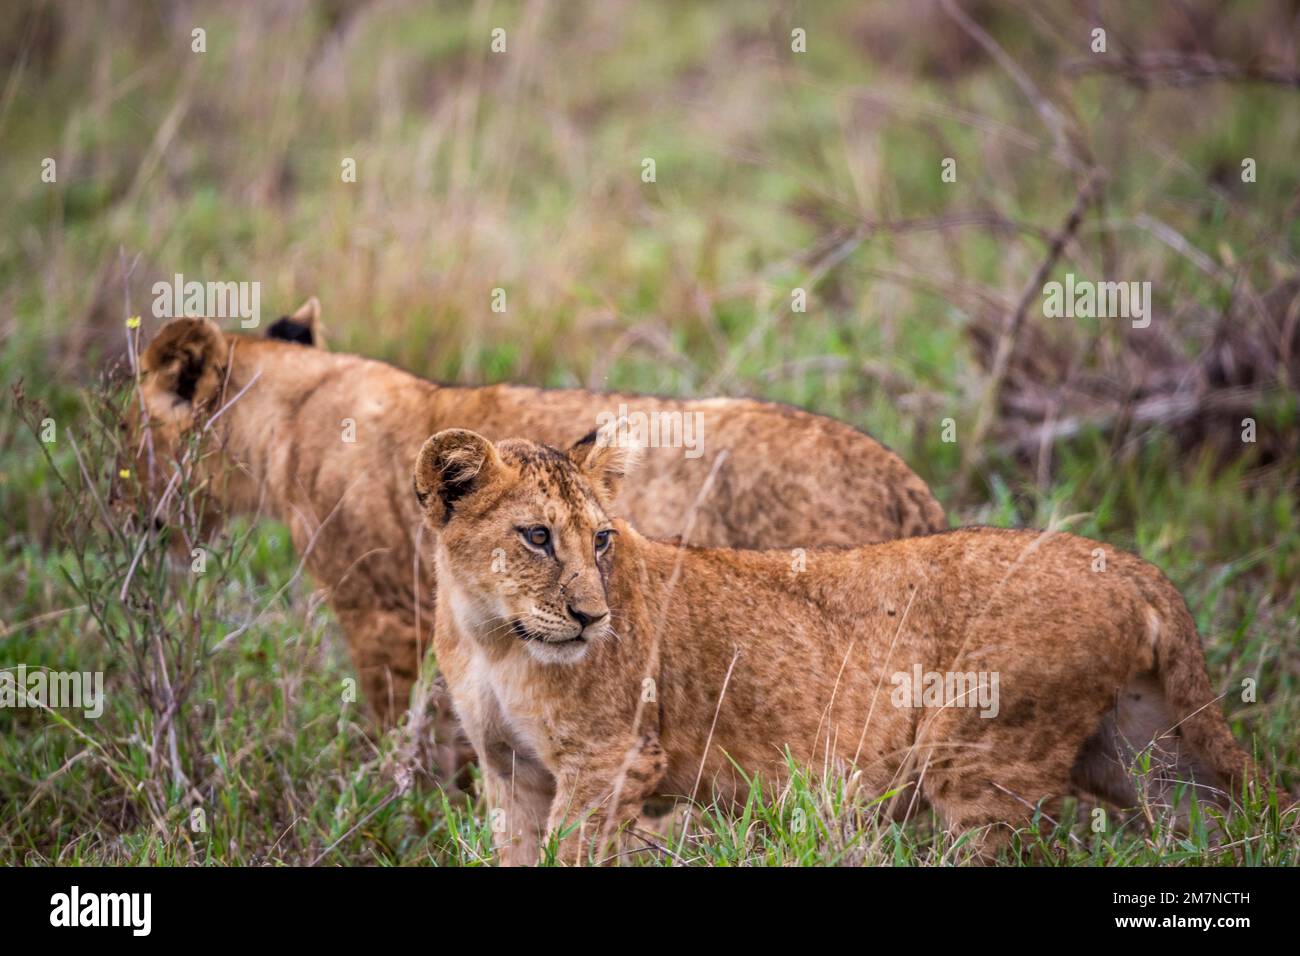 Löwenfamilie, Löwen im Gras der Savanne. Wir haben eine Safari durch den Tsavo West Nationalpark, Taita Hills, Tsavo, Kenia, Afrika gemacht Stockfoto